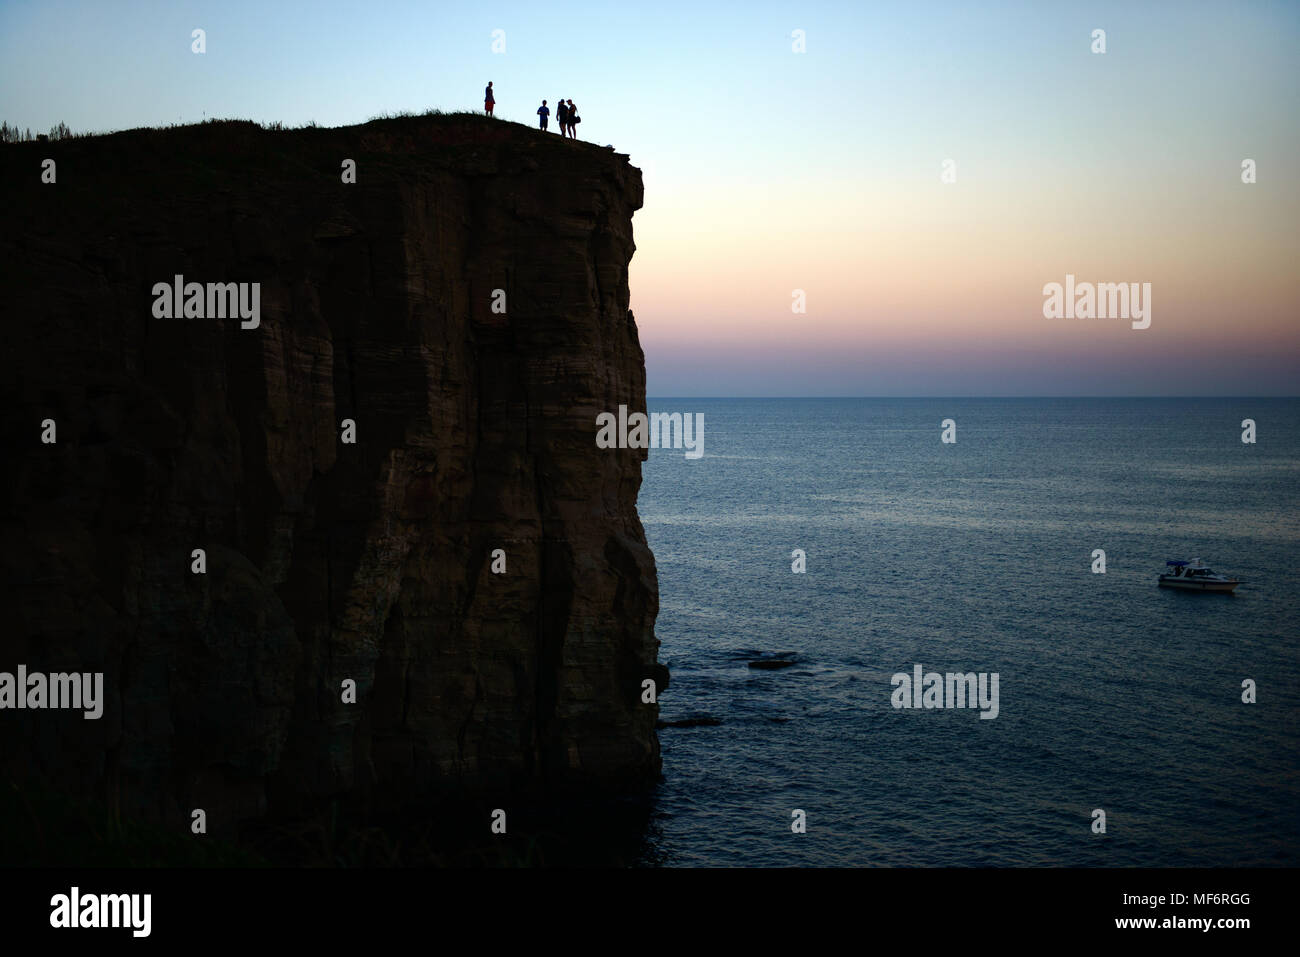 Rock Silhouette mit Menschen und das Meer im Sonnenuntergang Landschaft Stockfoto